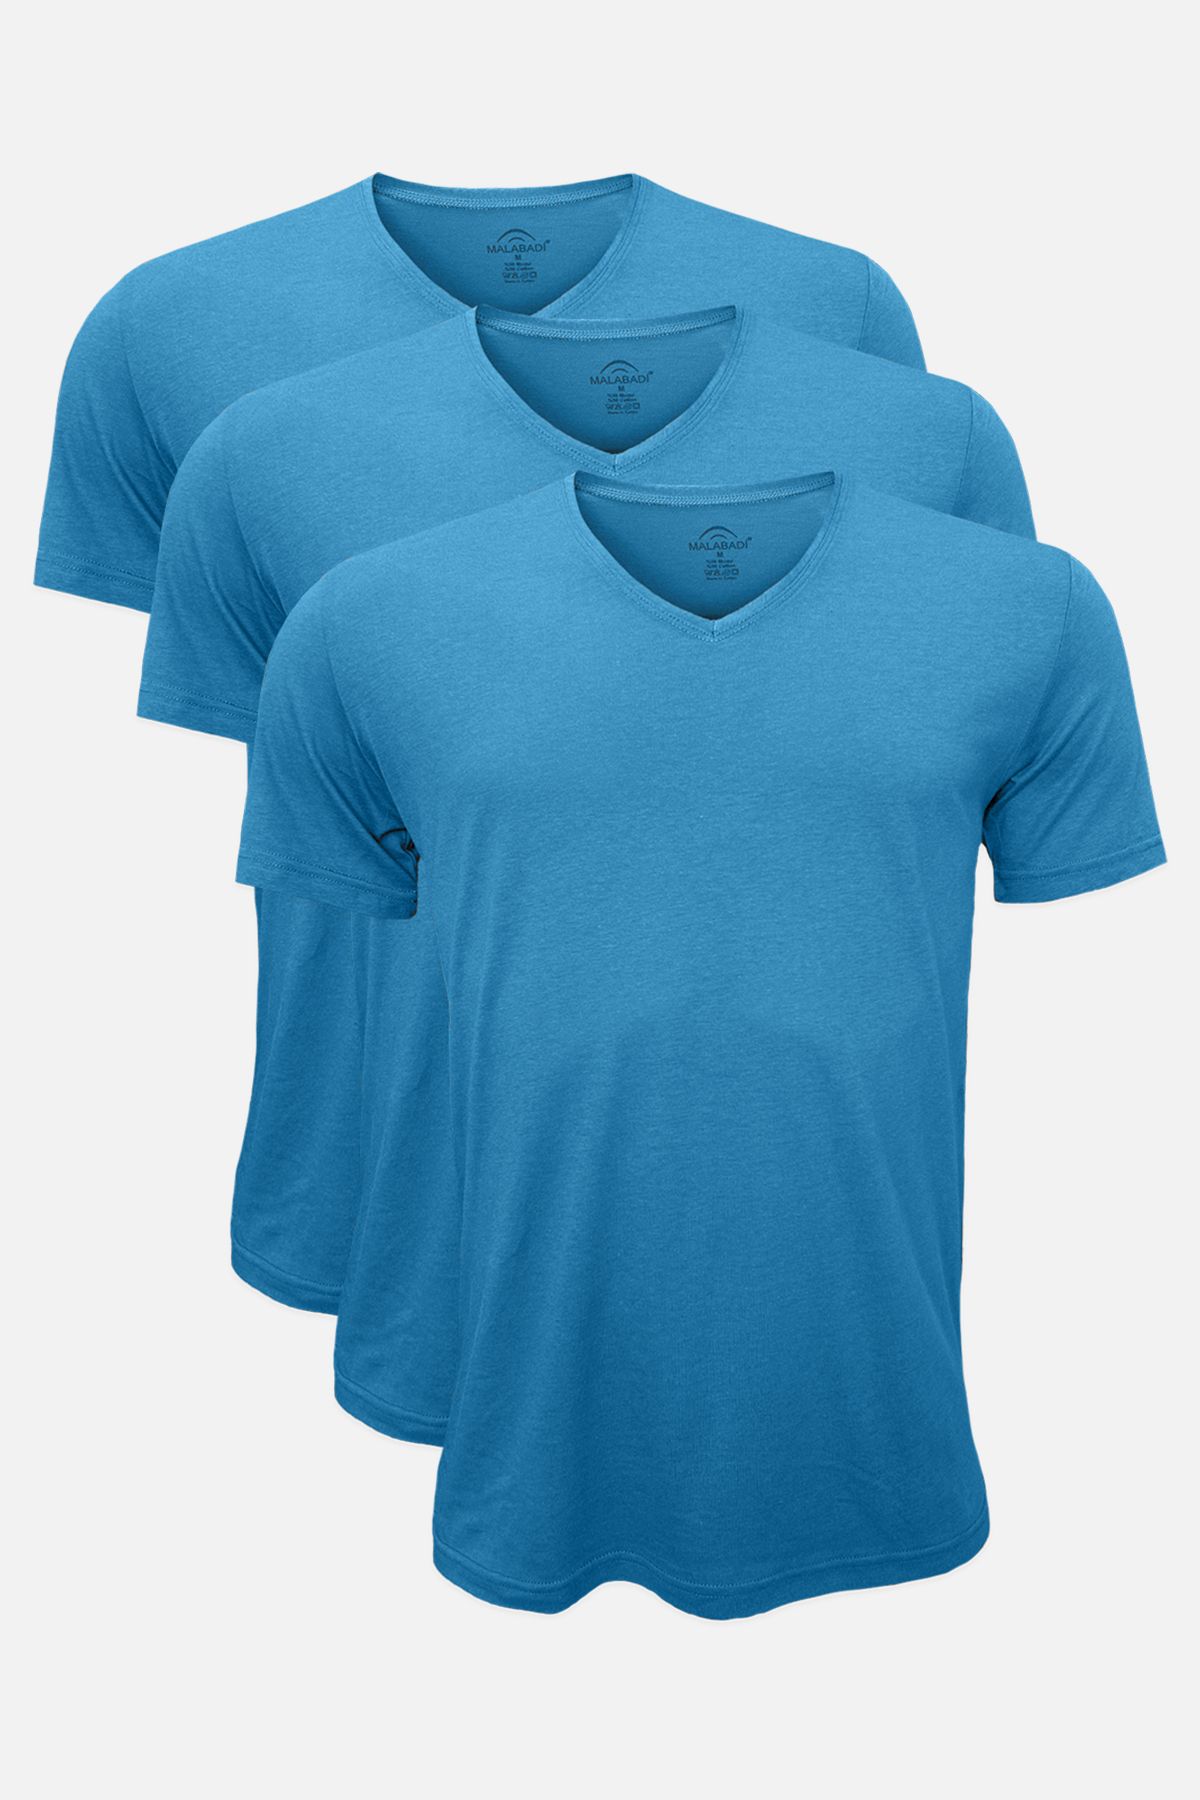 Malabadi Yaz Serinliği Erkek Mavi Basic V Yaka Ince Modal Kumaş 3 Lü Tişört Paketi 3m085